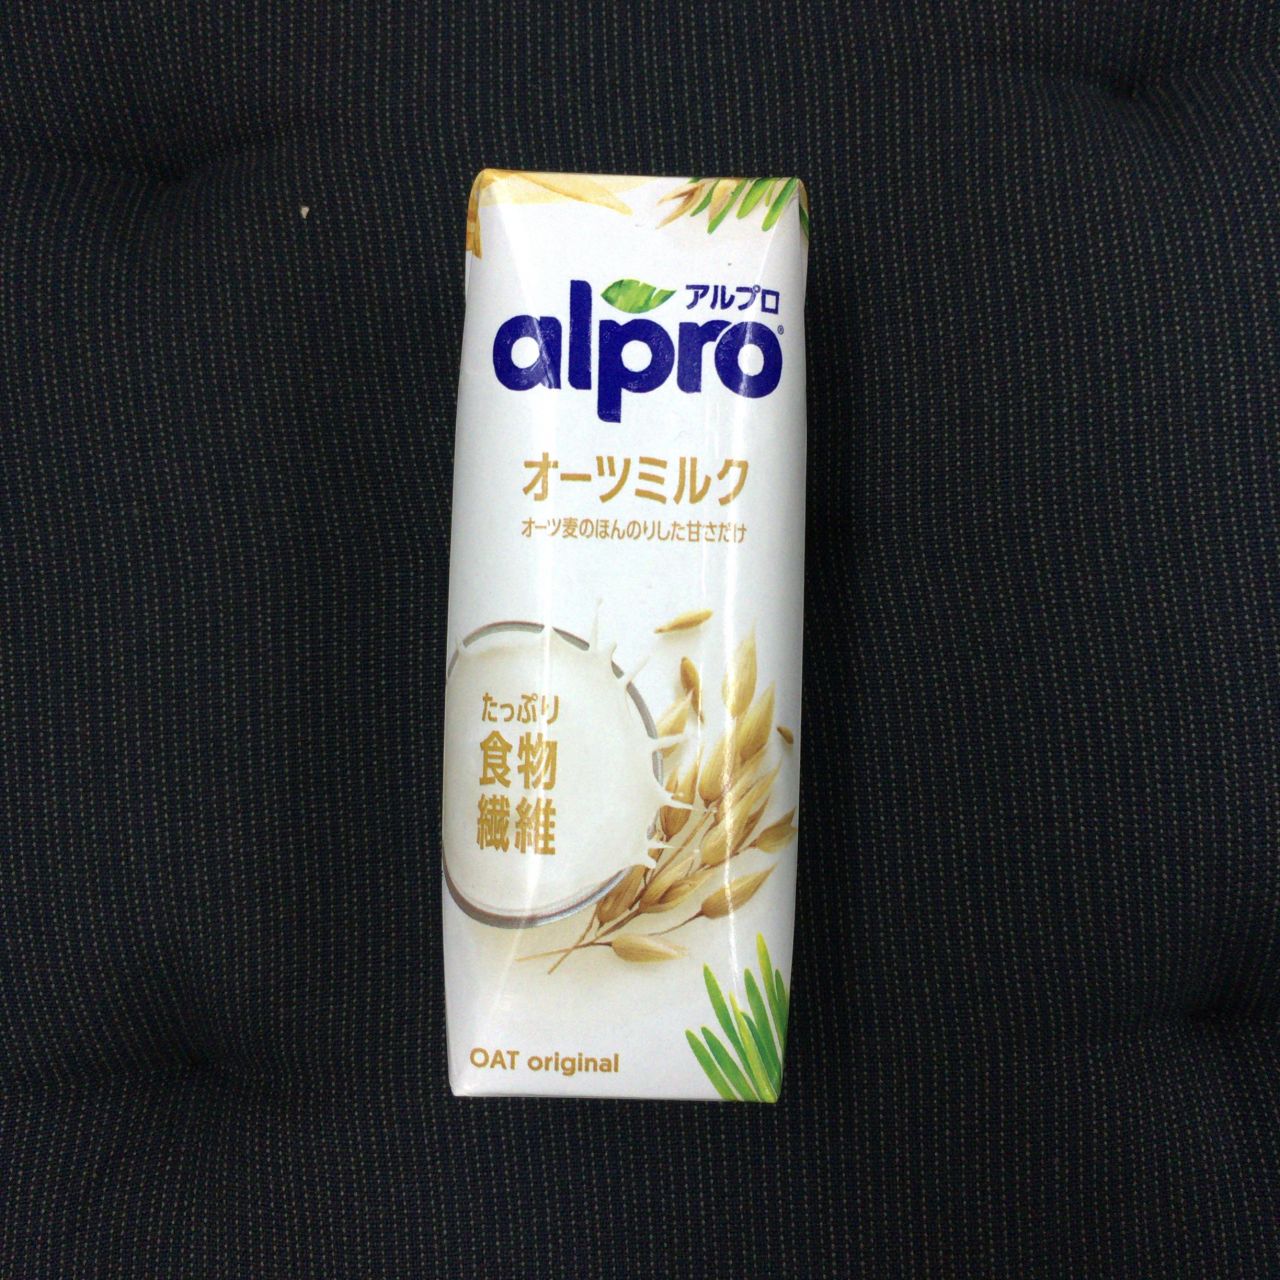 ミルク コストコ オーツ コストコのアルプロオーツミルクは食物繊維たっぷりで、クセが無く飲みやすい